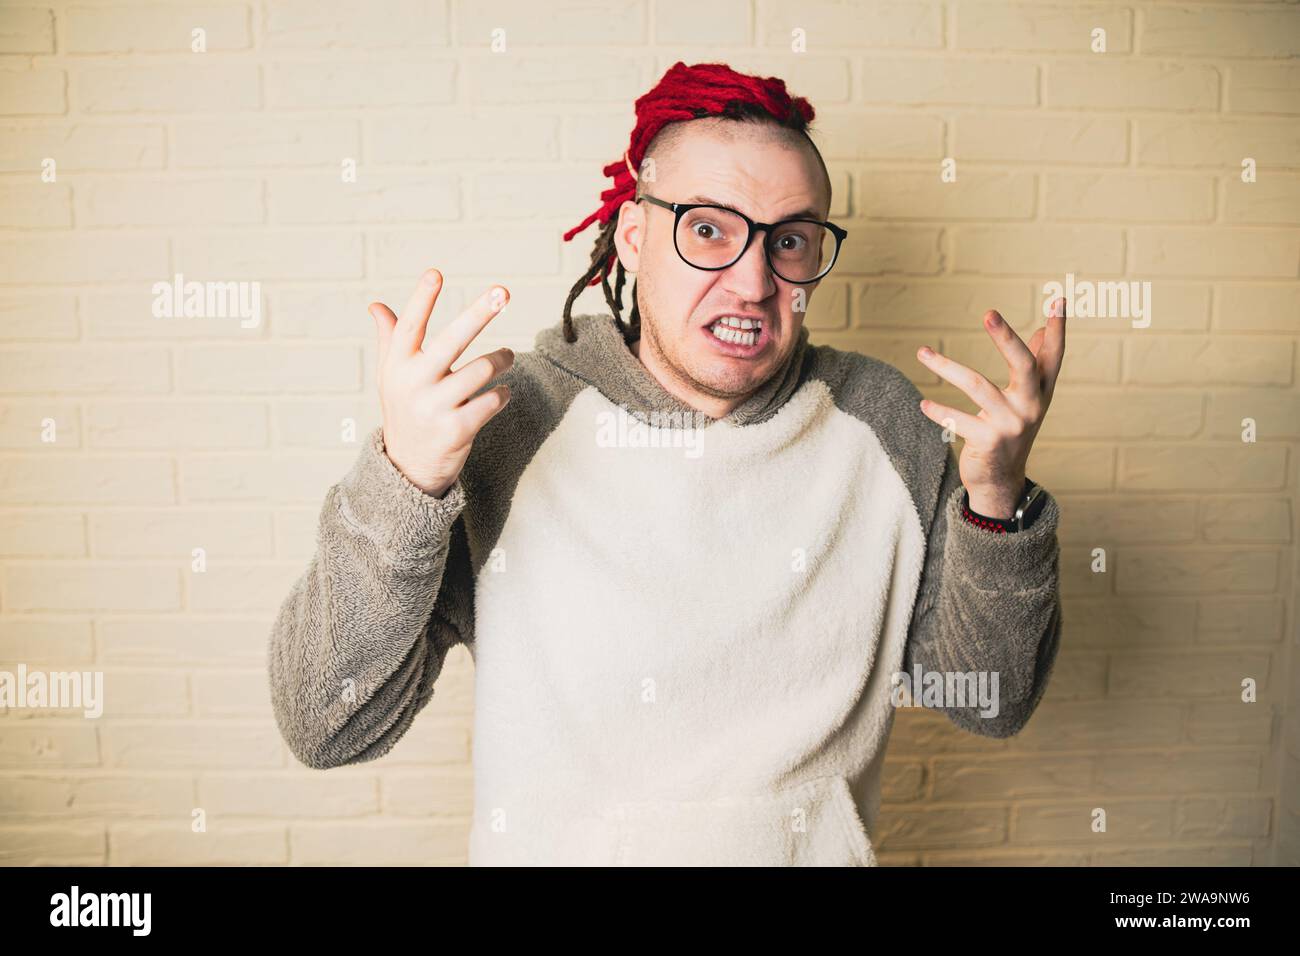 Un bel homme adulte avec des lunettes et des dreadlocks rouges est en colère contre un mur de briques blanches. Banque D'Images